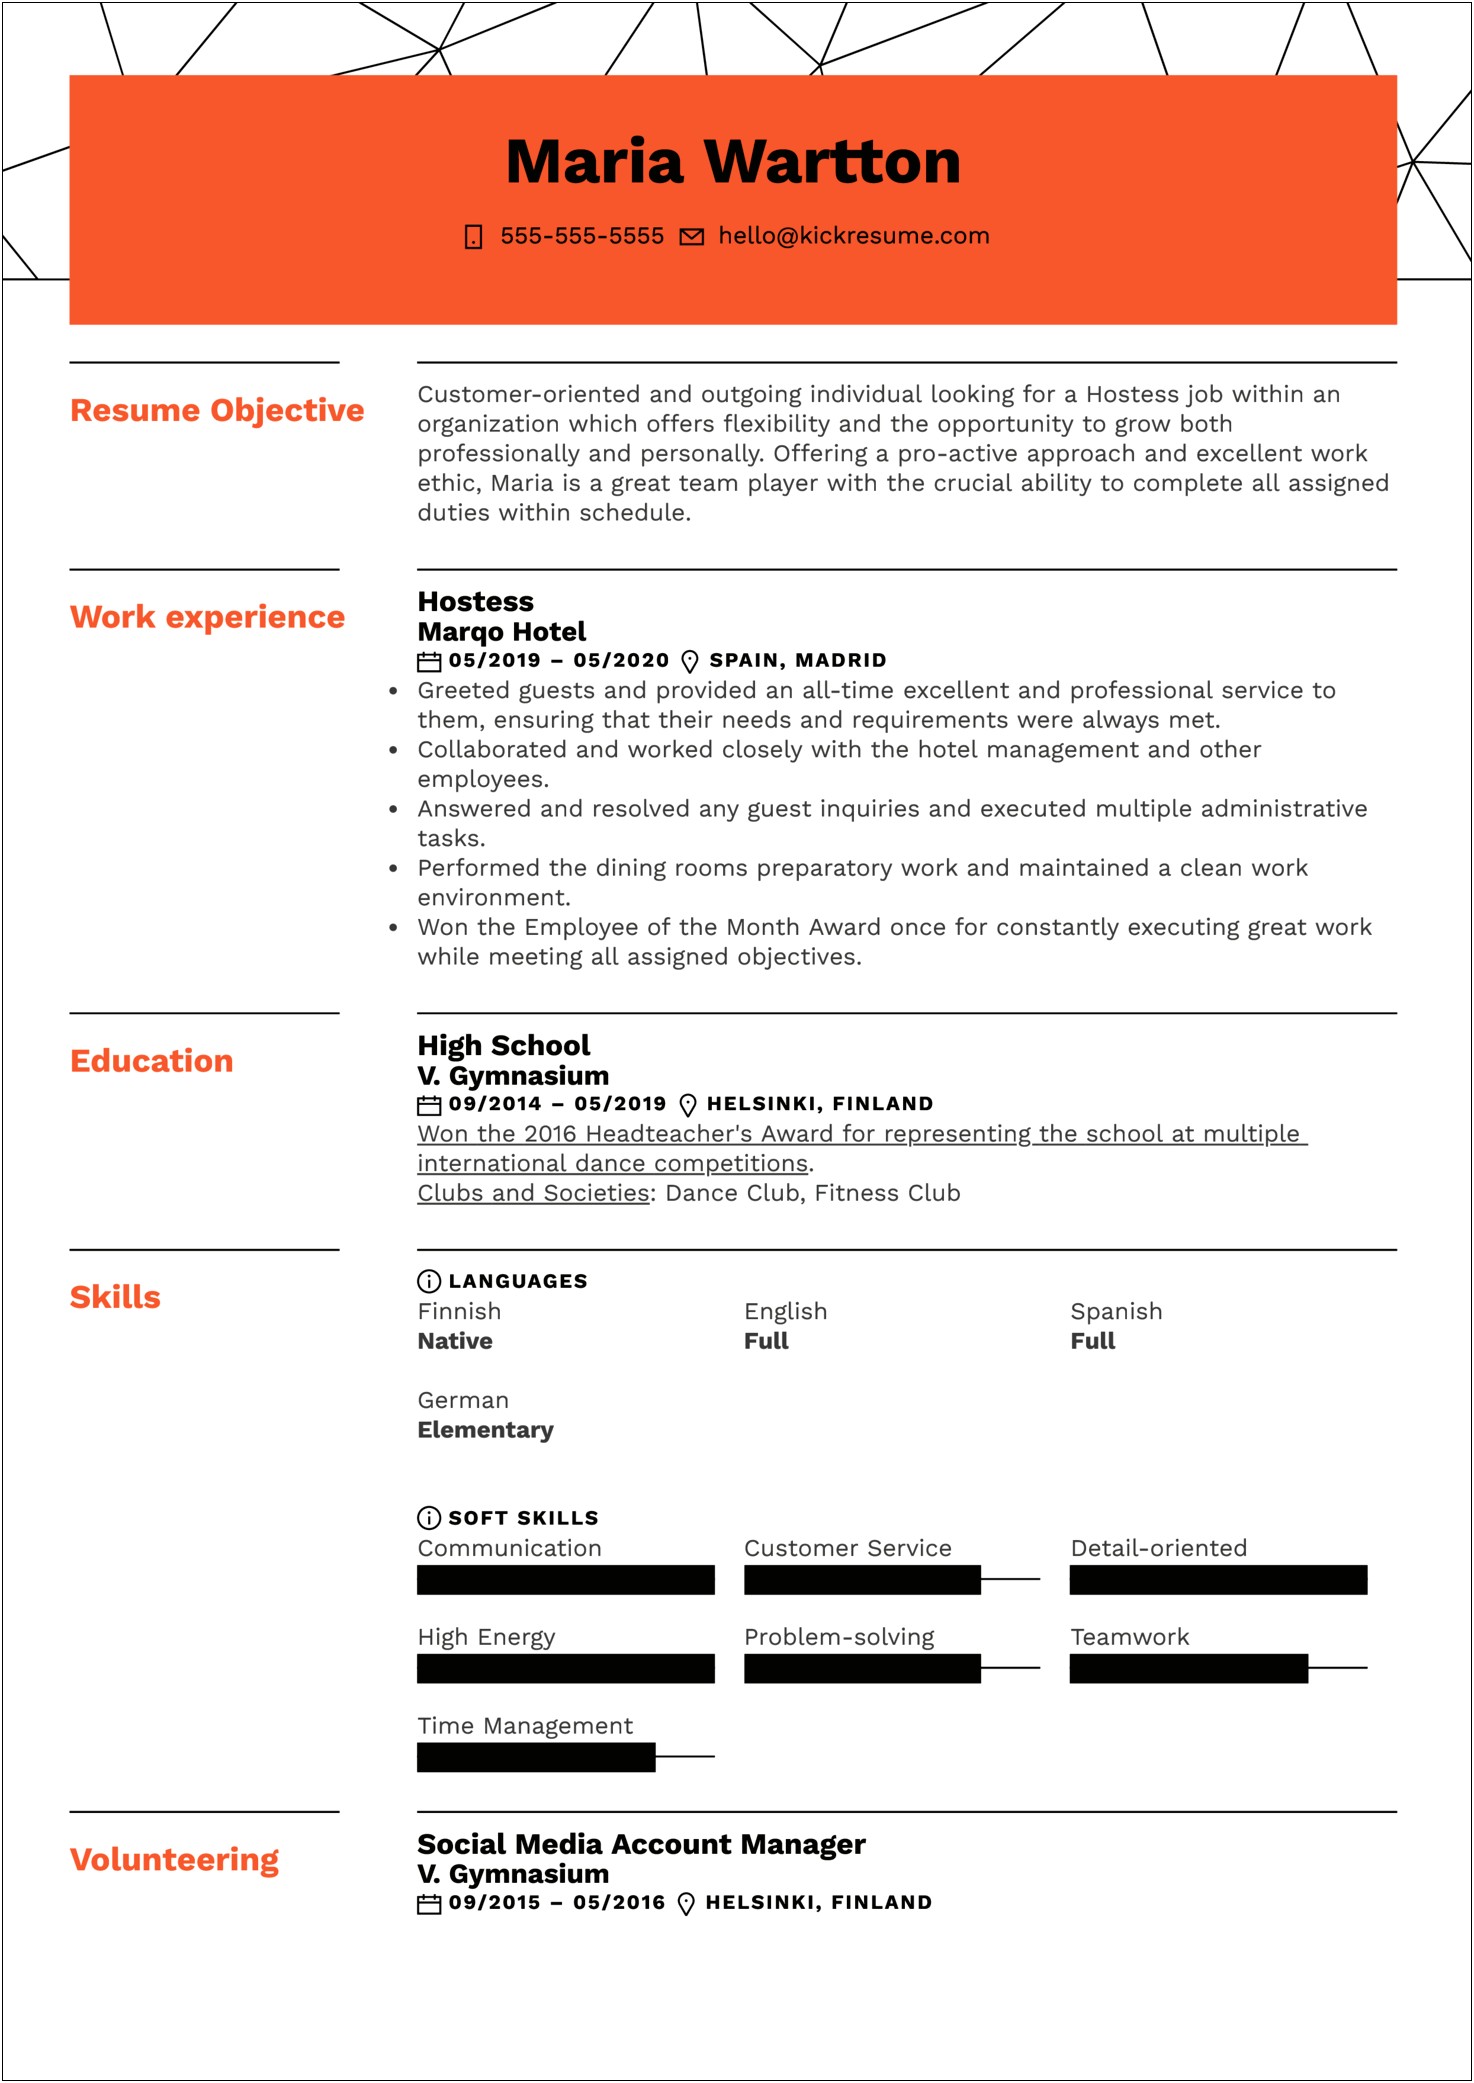 Job Description For A Hostess Resume